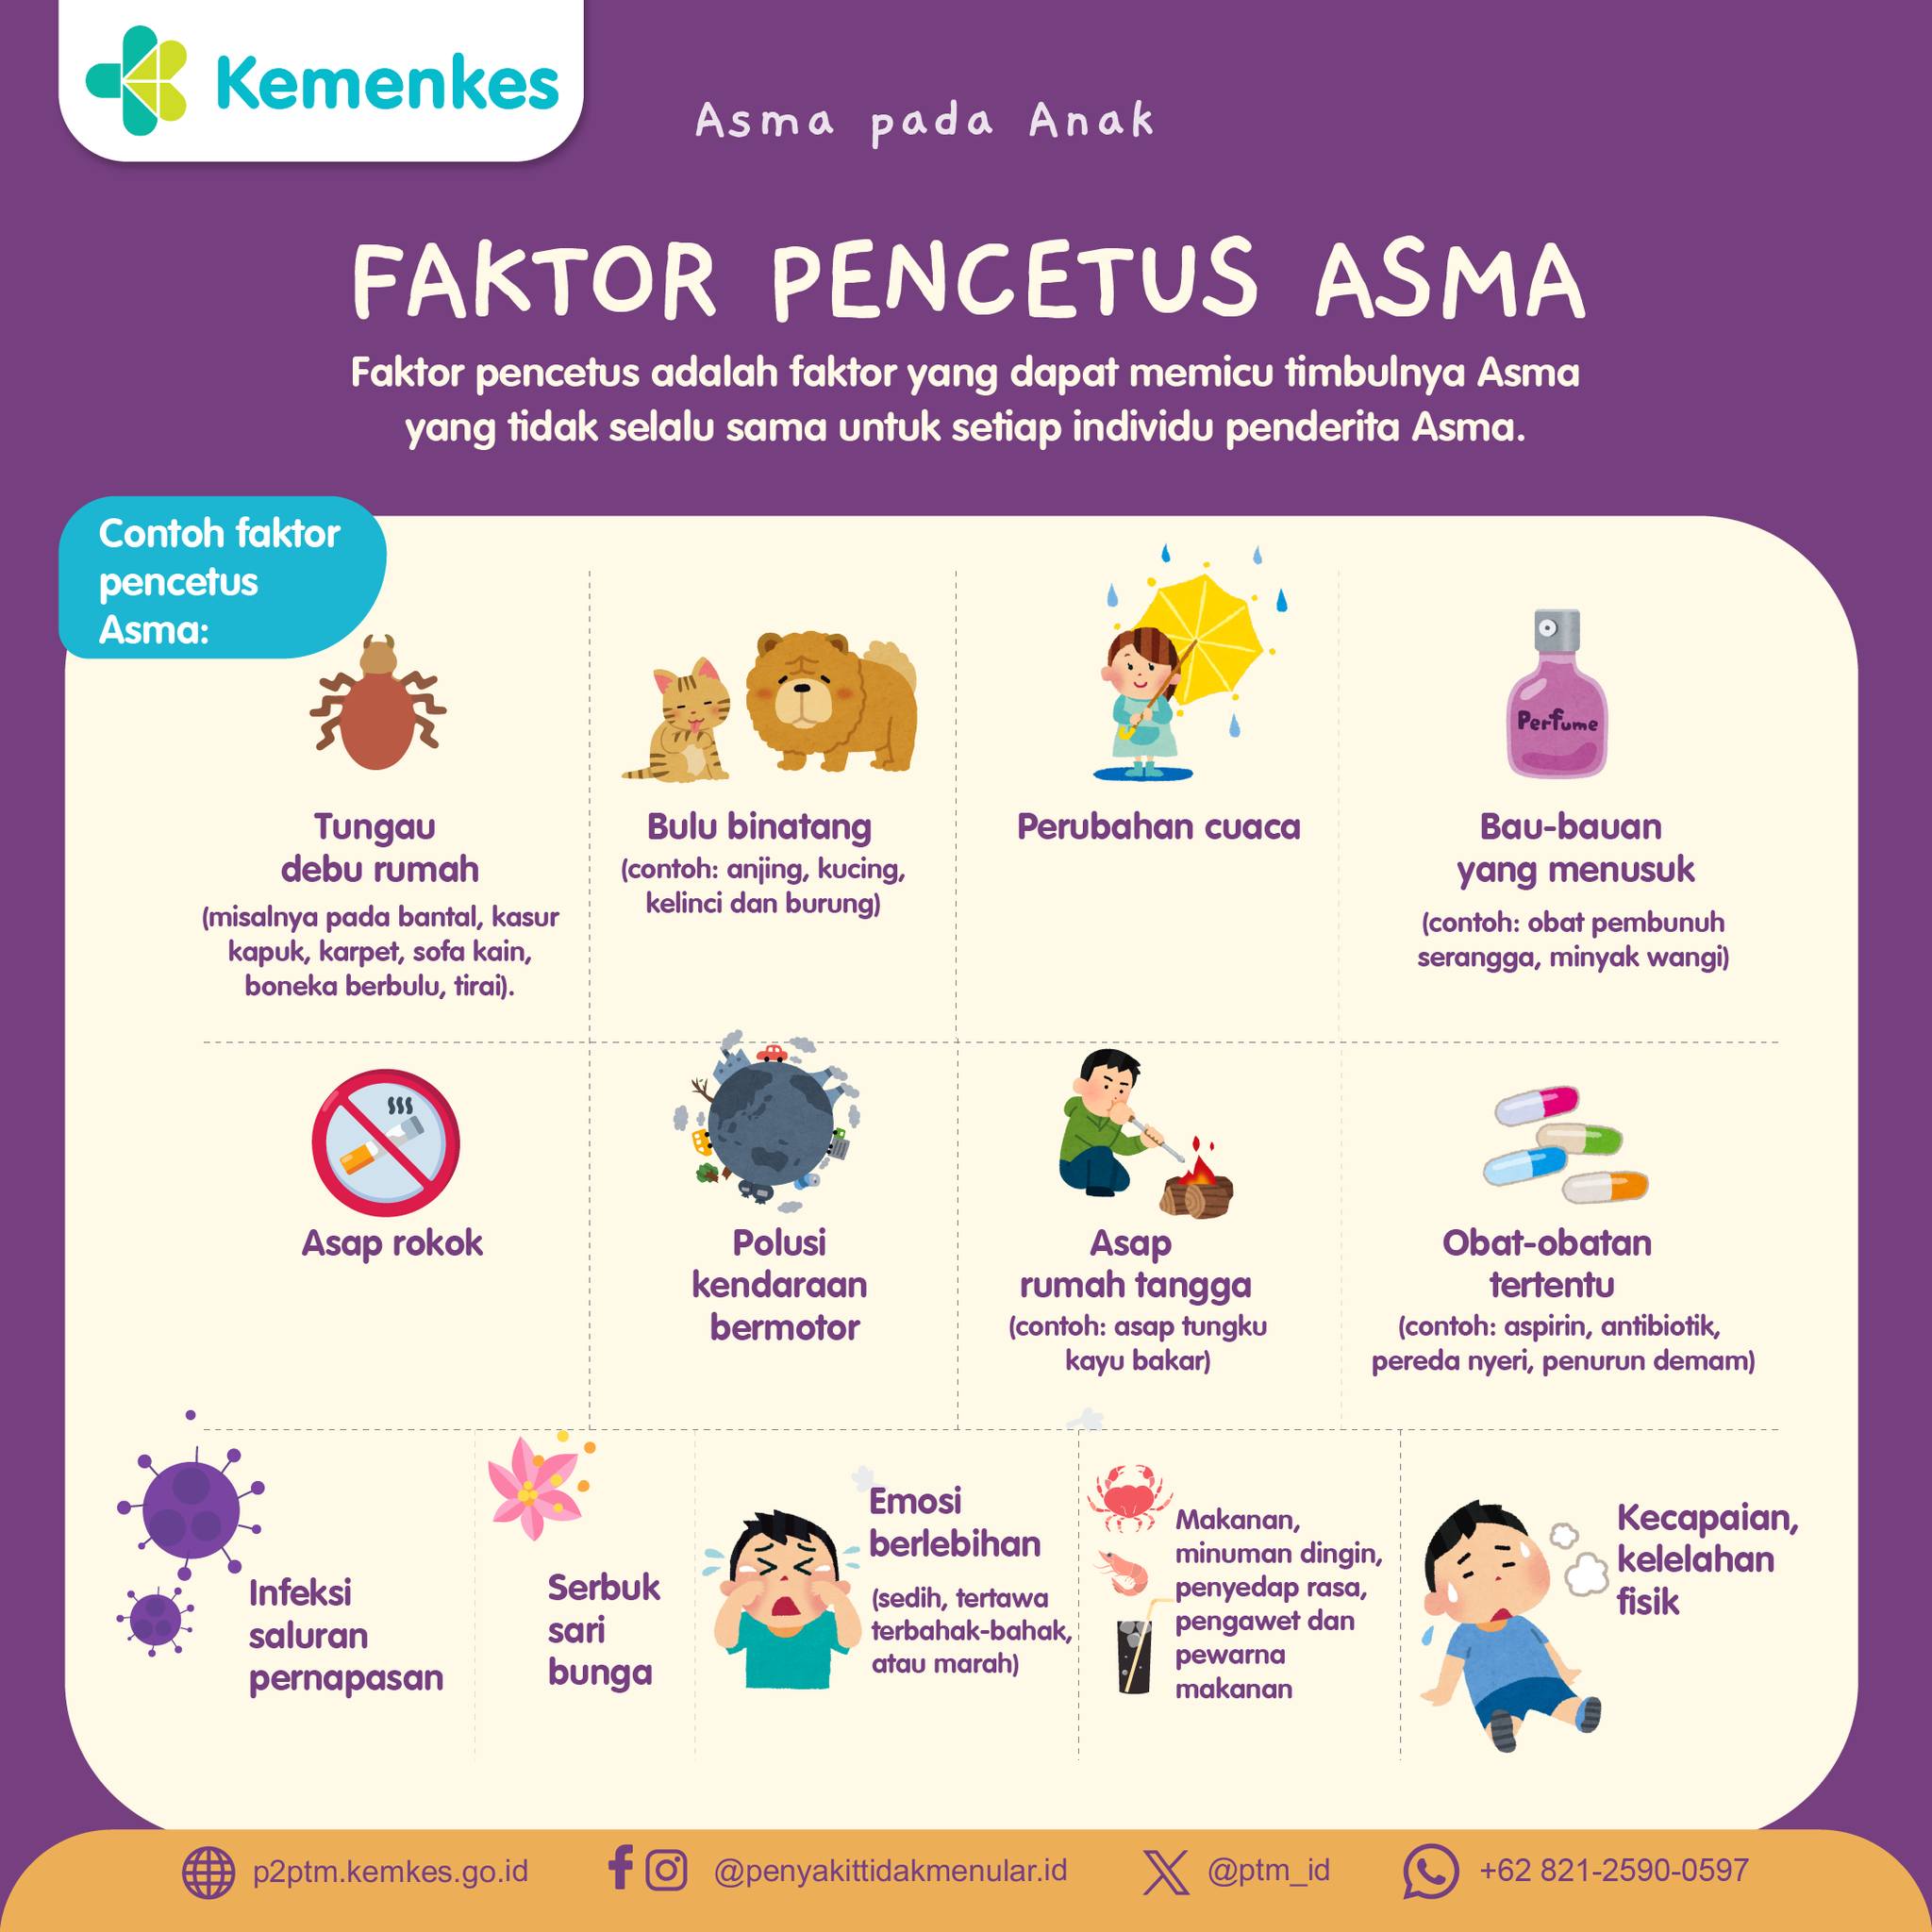 Berikut Faktor Pencetus Asma